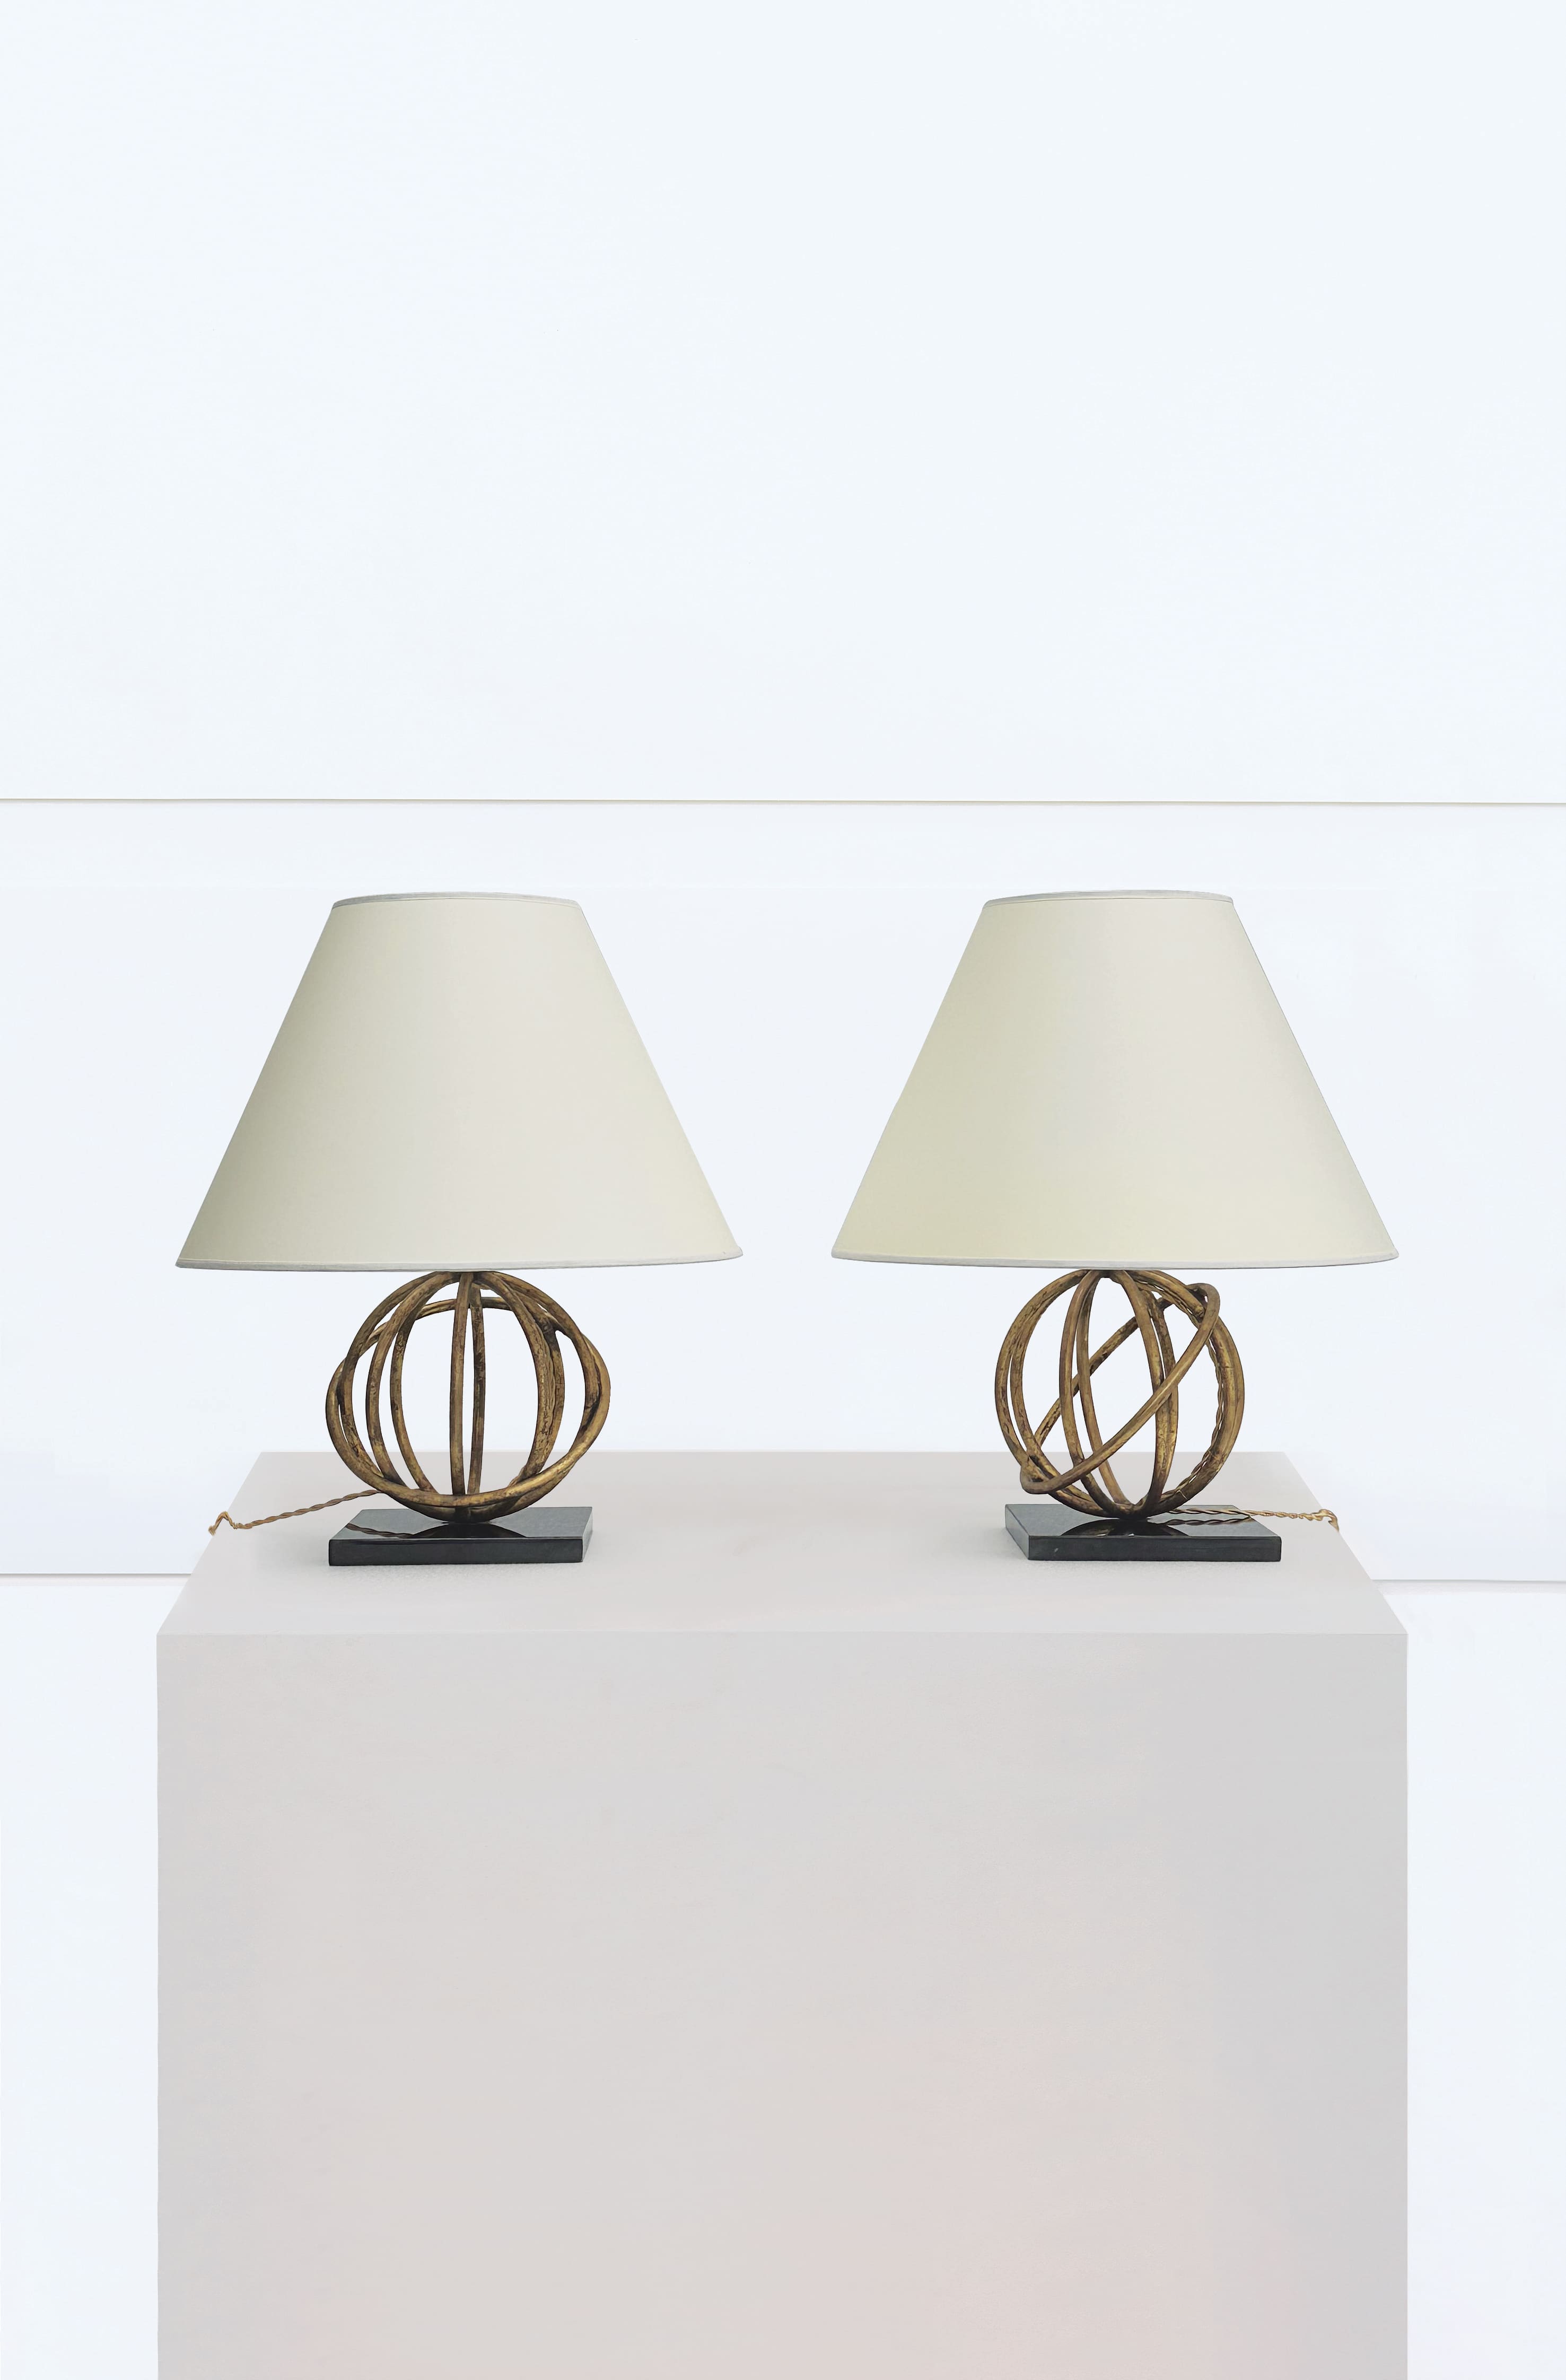 Jean Royère, paire de lampes « Sphère », vue 01